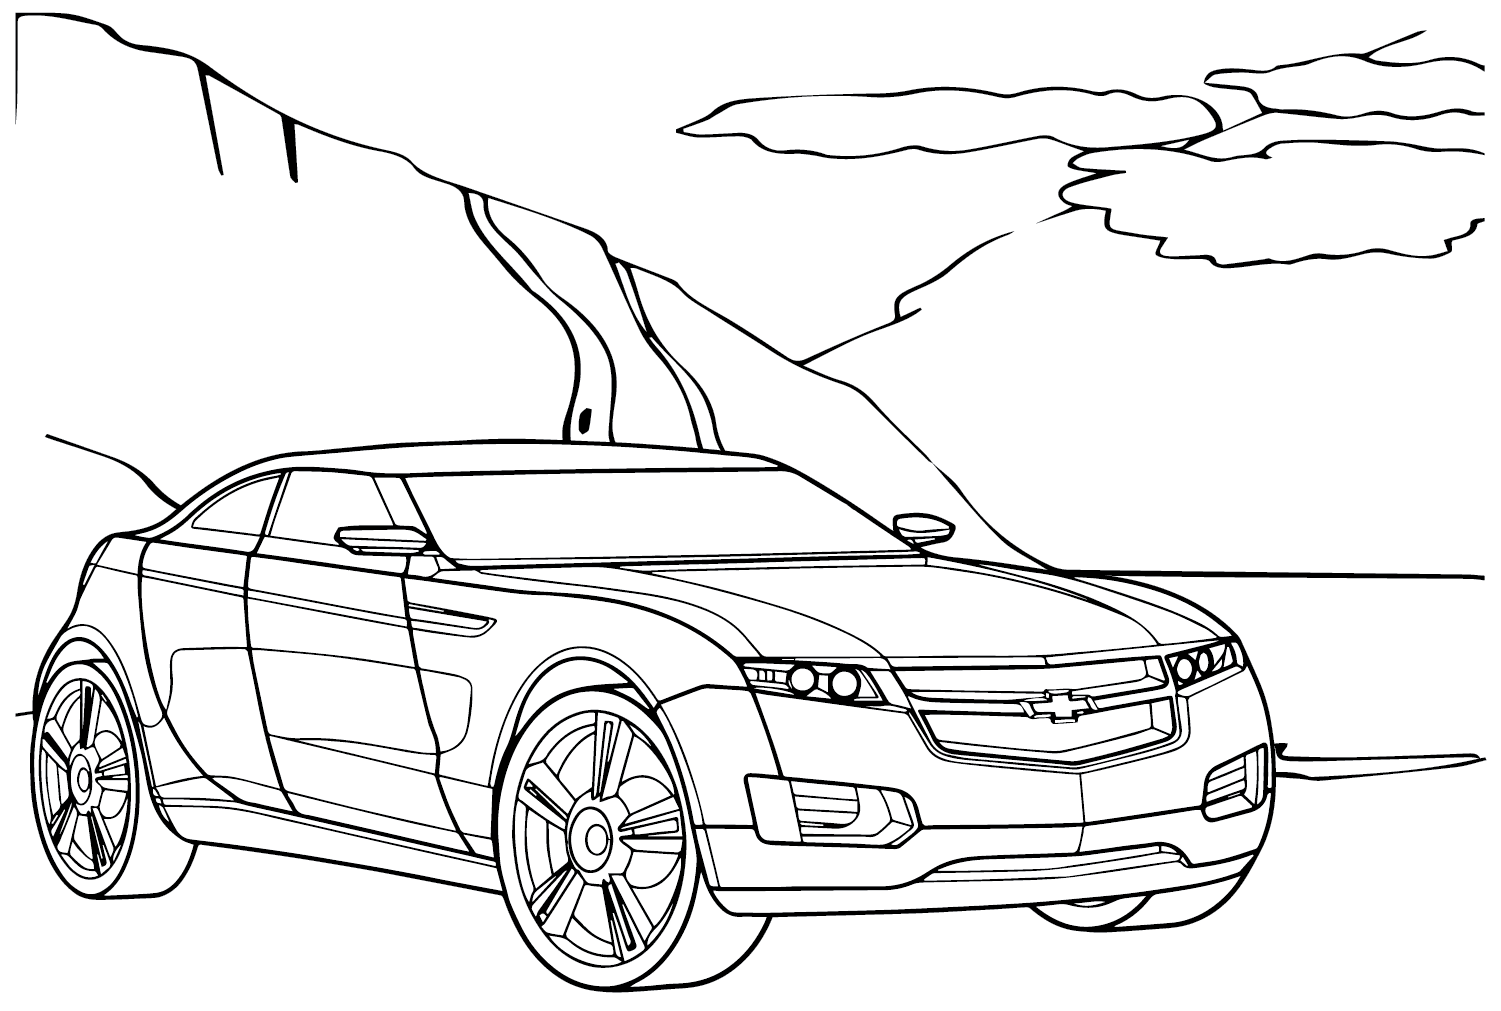 Página para colorear de Chevrolet Volt de Chevrolet